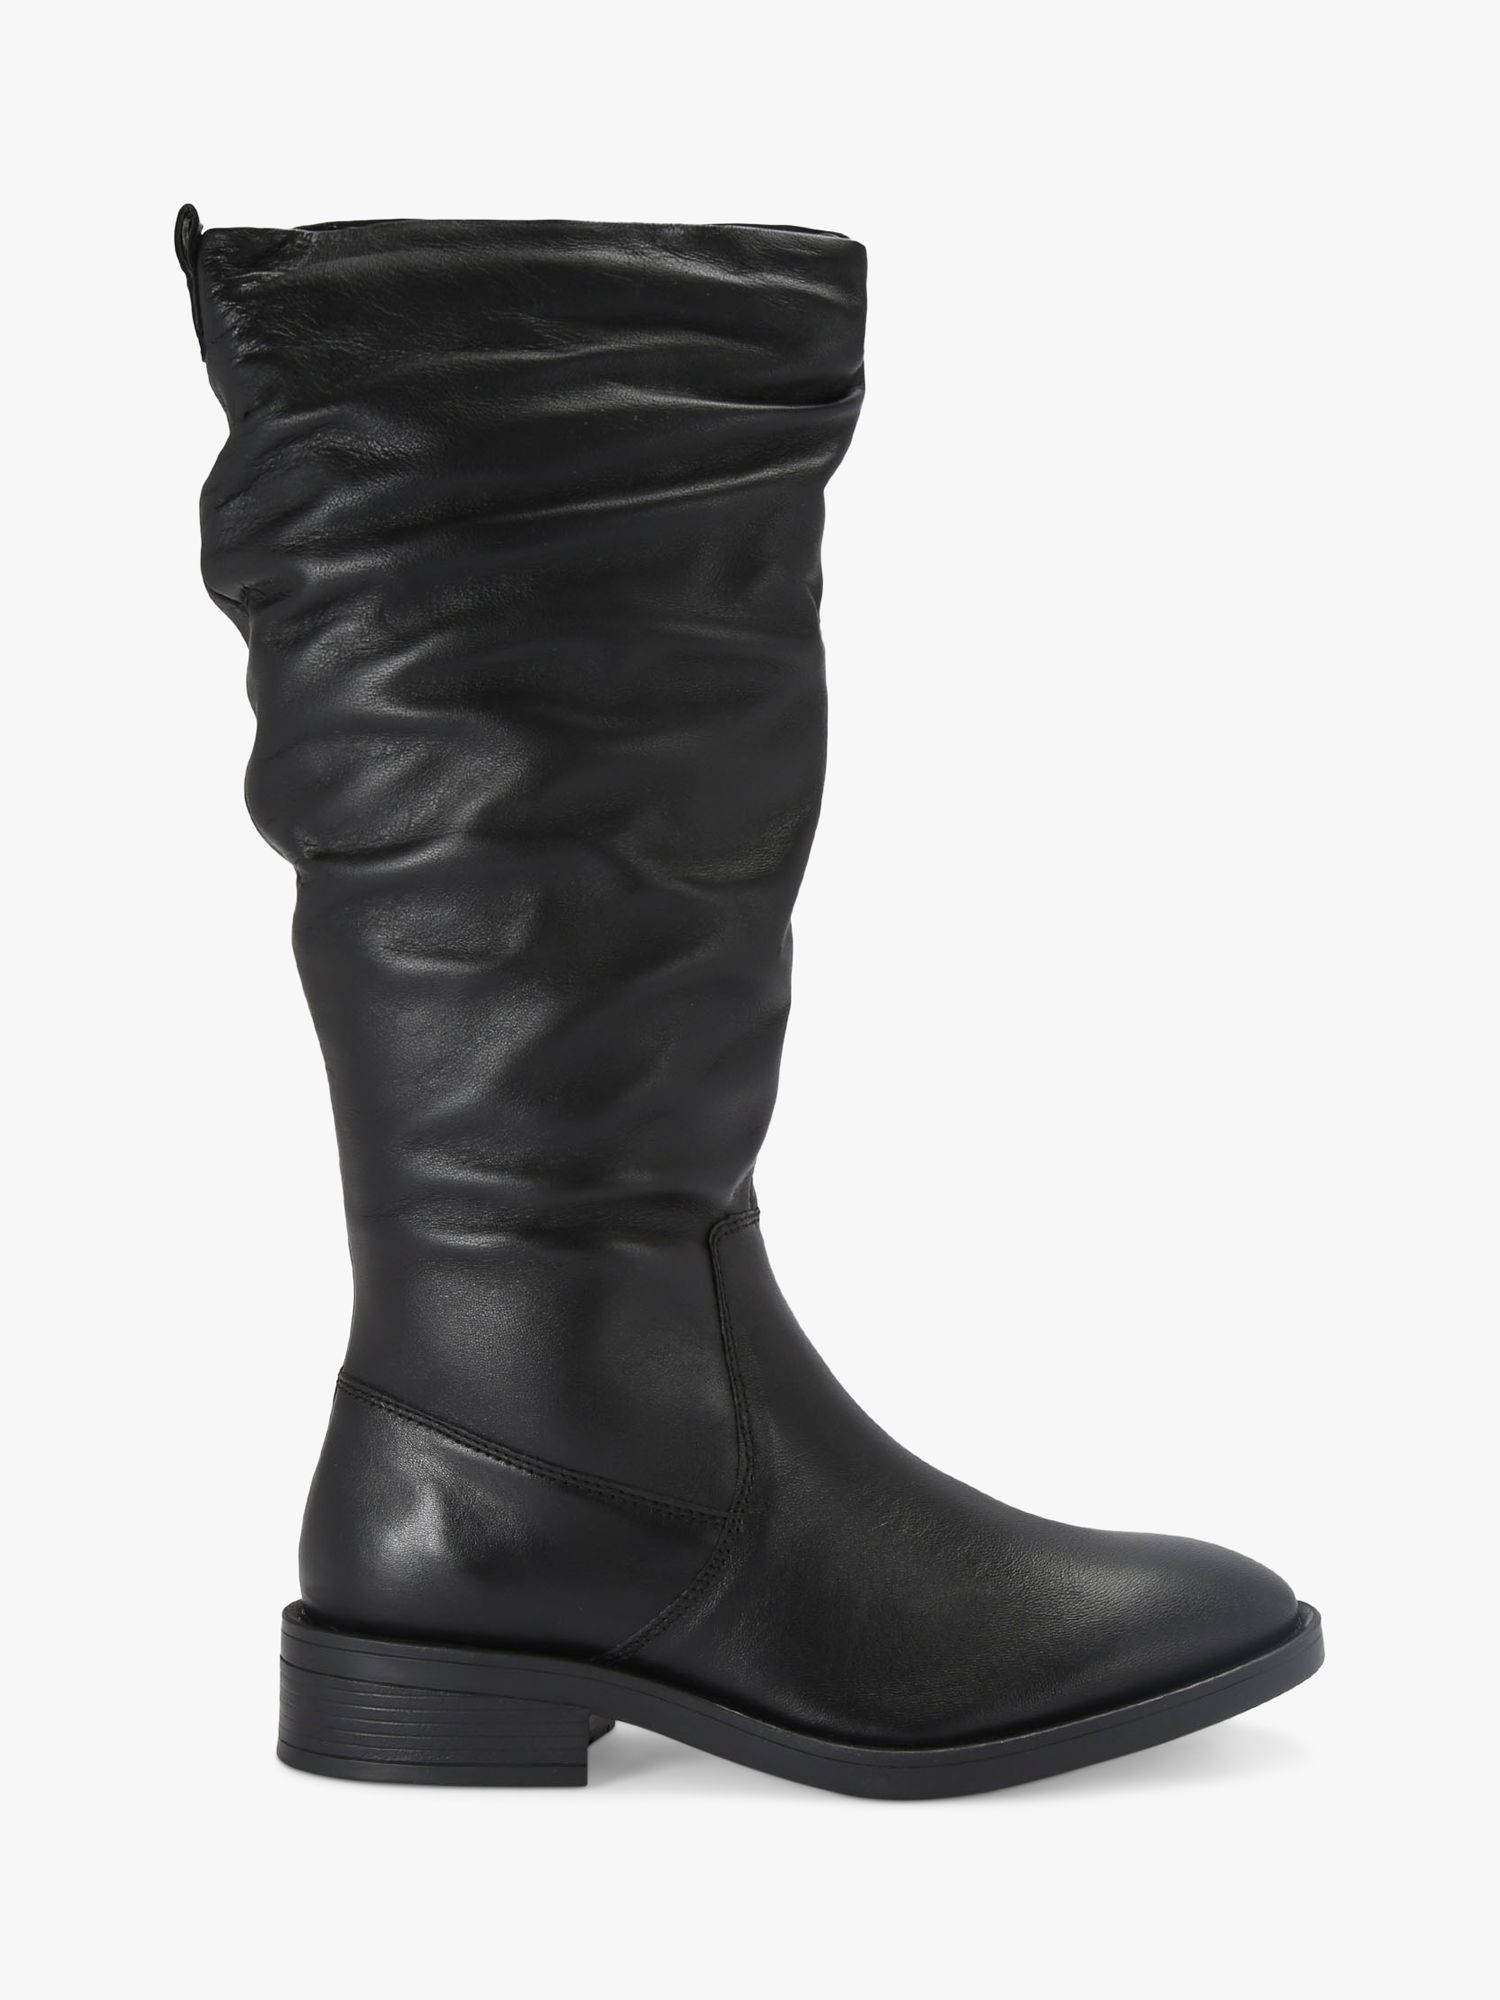 Carvela Parlour Leather Calf Boots, Black, 5